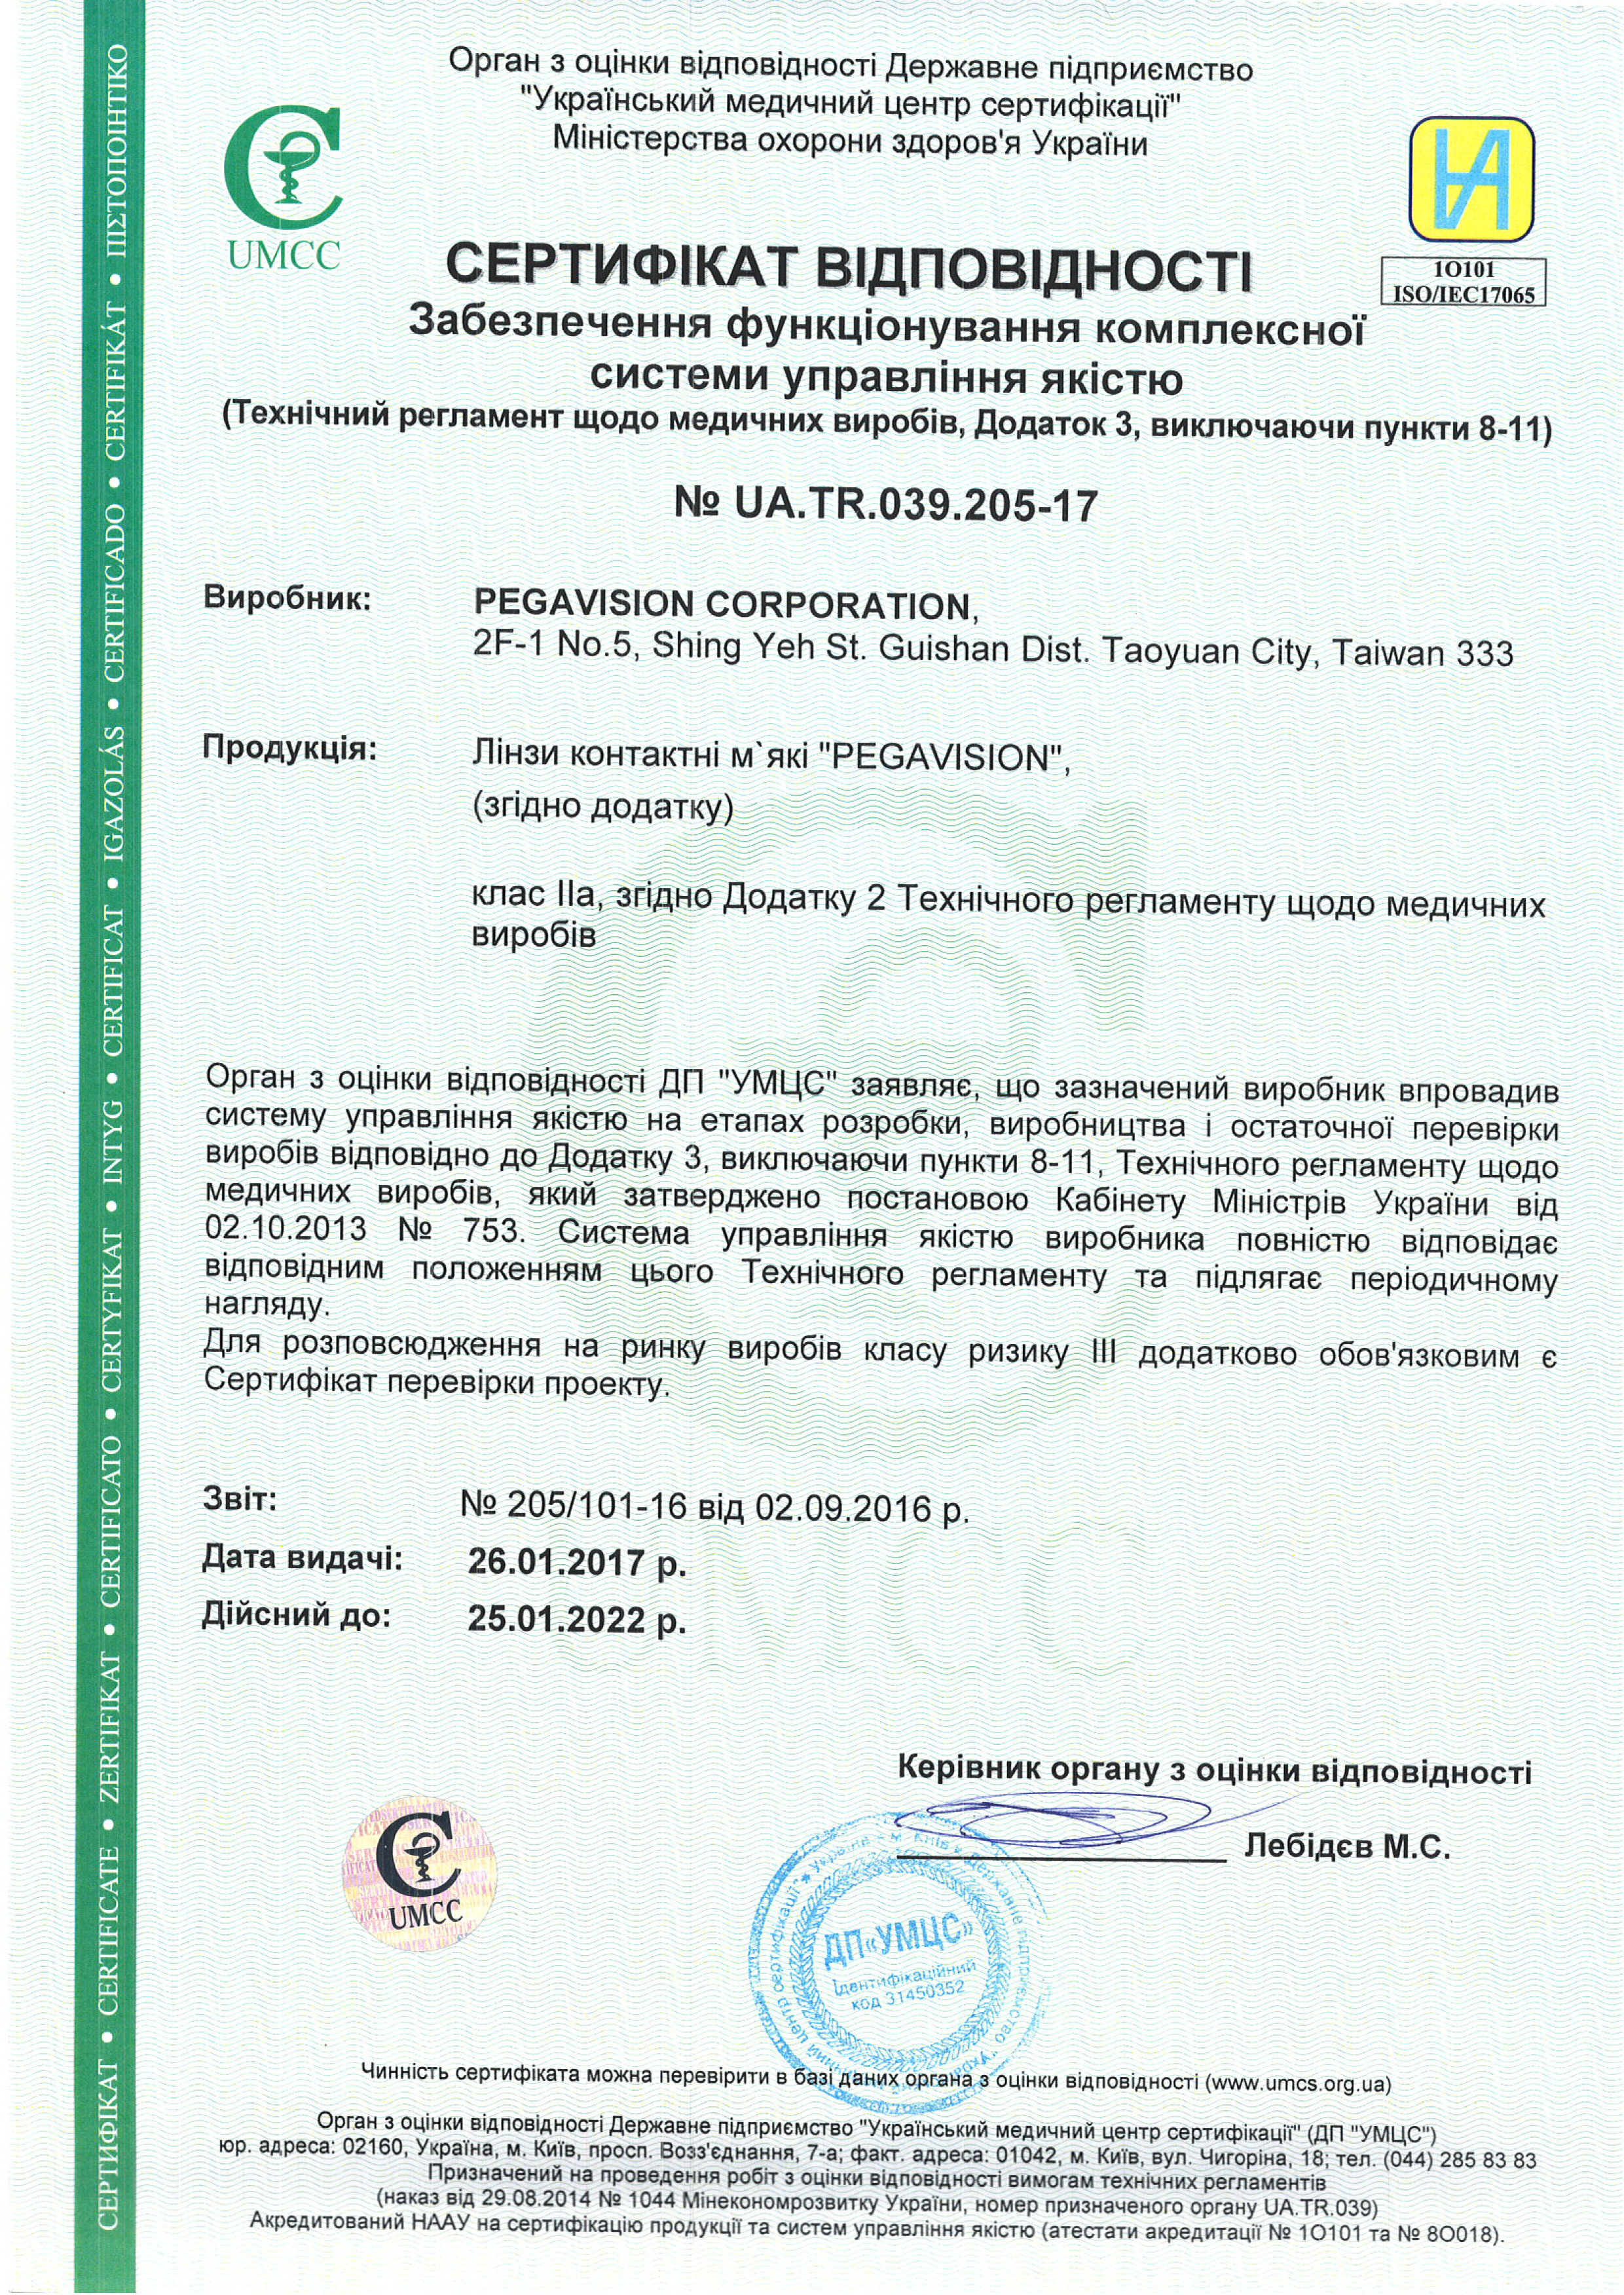 Сертификат соответствия Pegavision